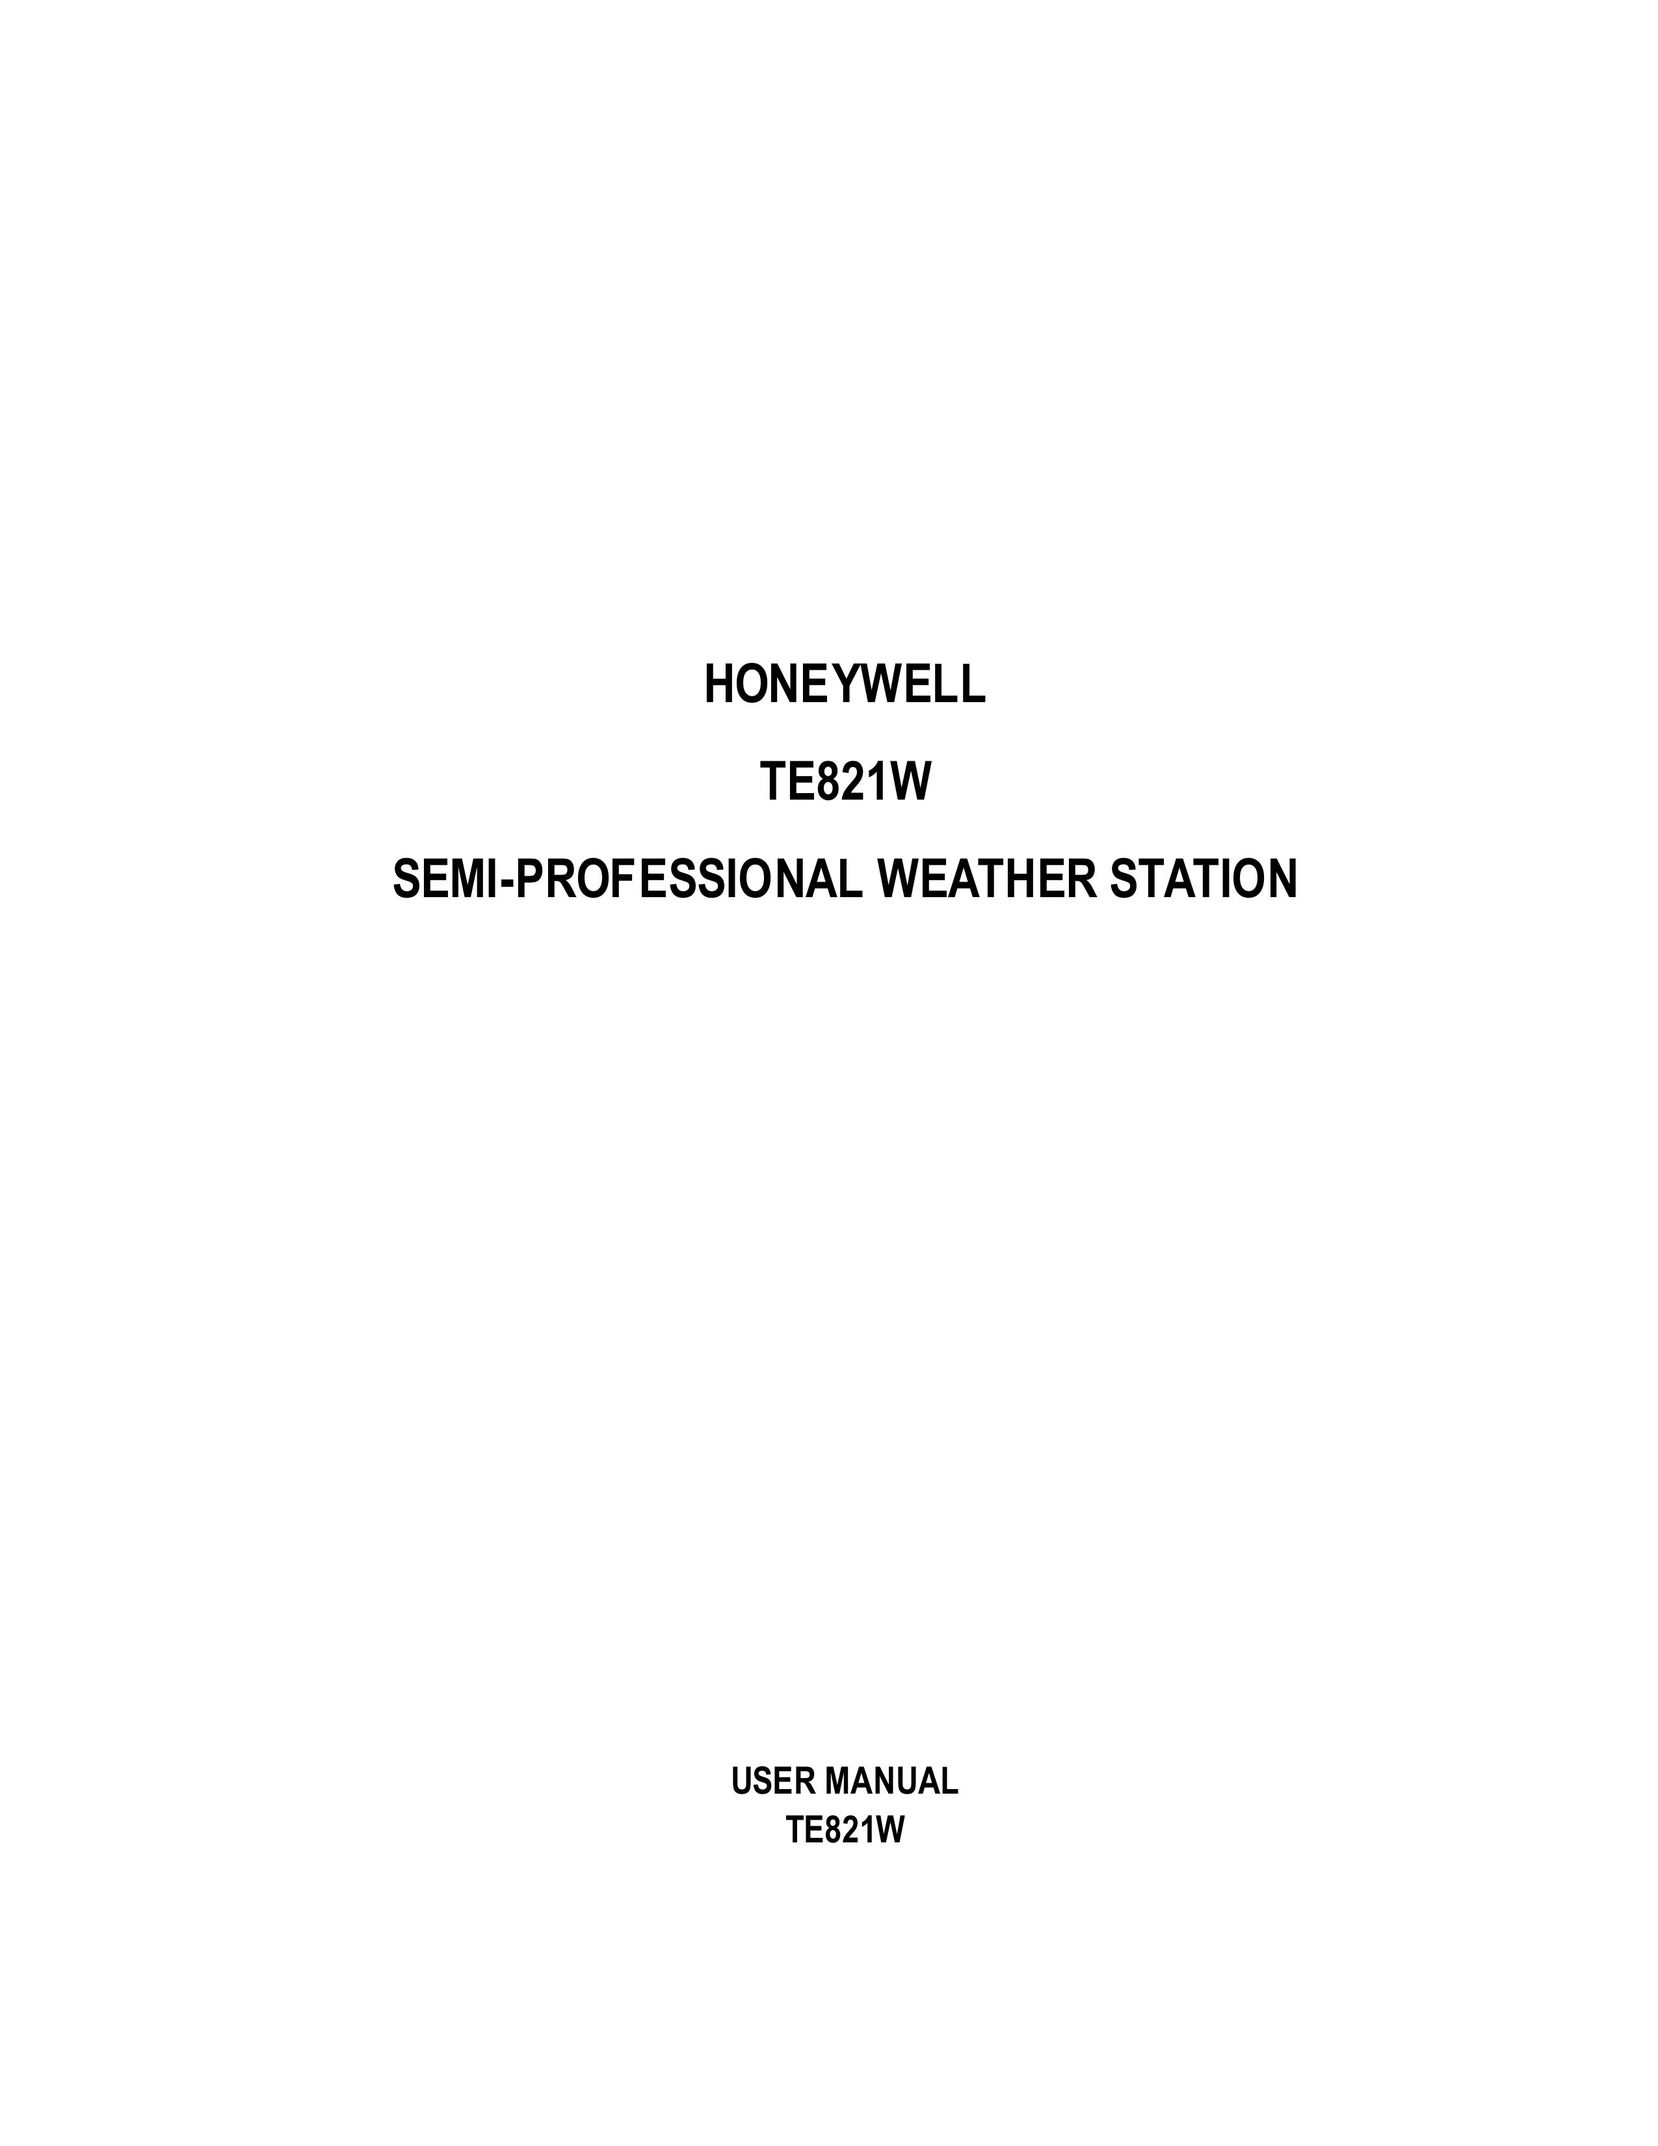 Honeywell TE821WD Portable Radio User Manual